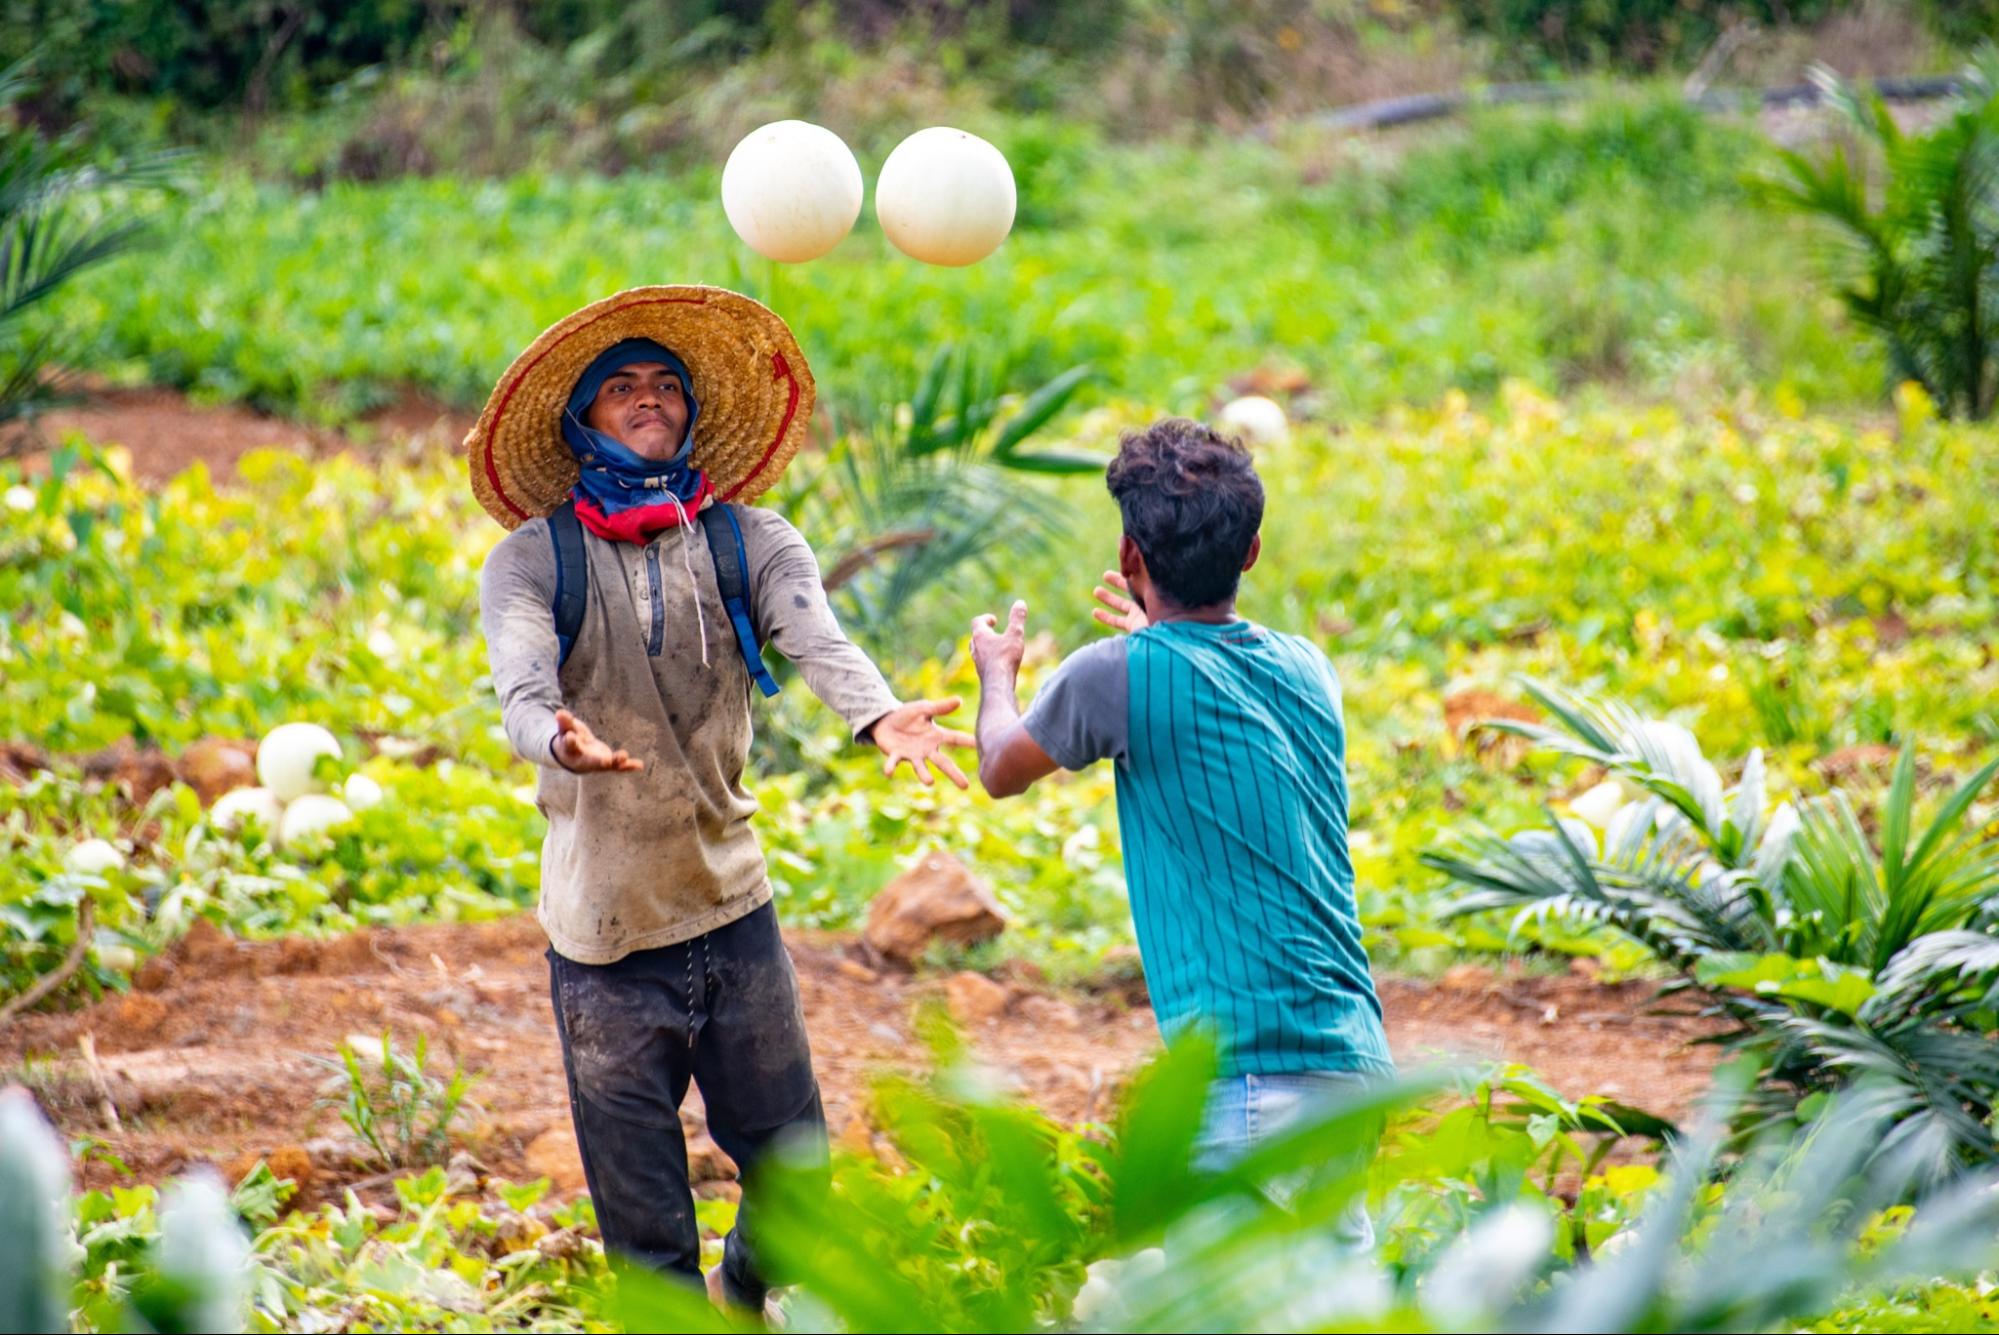 melon farming in malaysia - farmers tossing honeydews